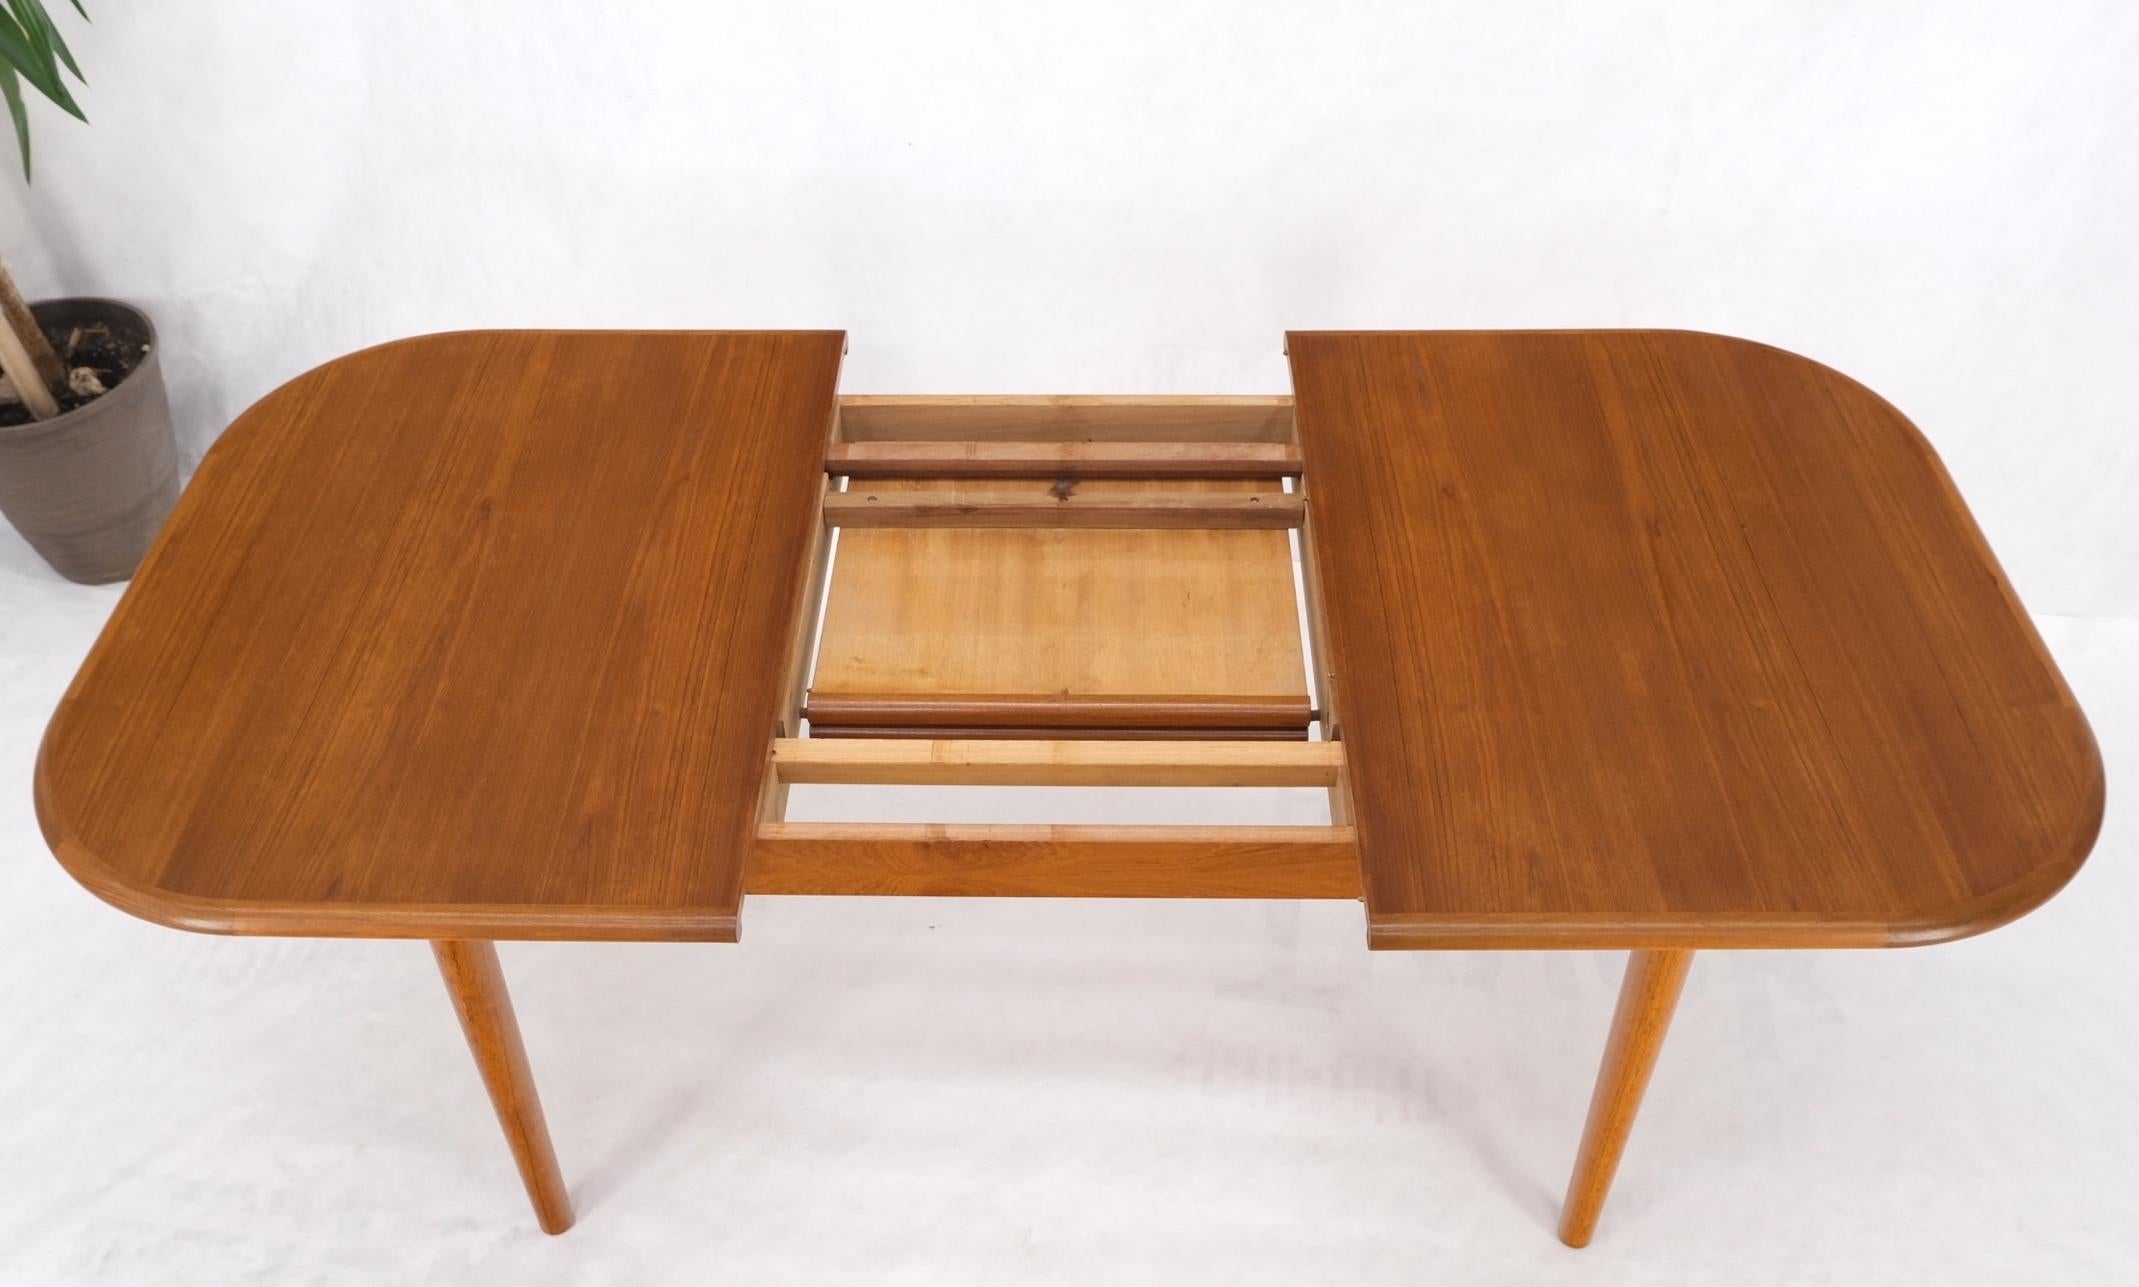 Table de salle à manger rectangulaire à coins arrondis en teck danois, avec une rallonge de table cachée, feuille de menthe.
Une feuille de table mesure 20'' de large.